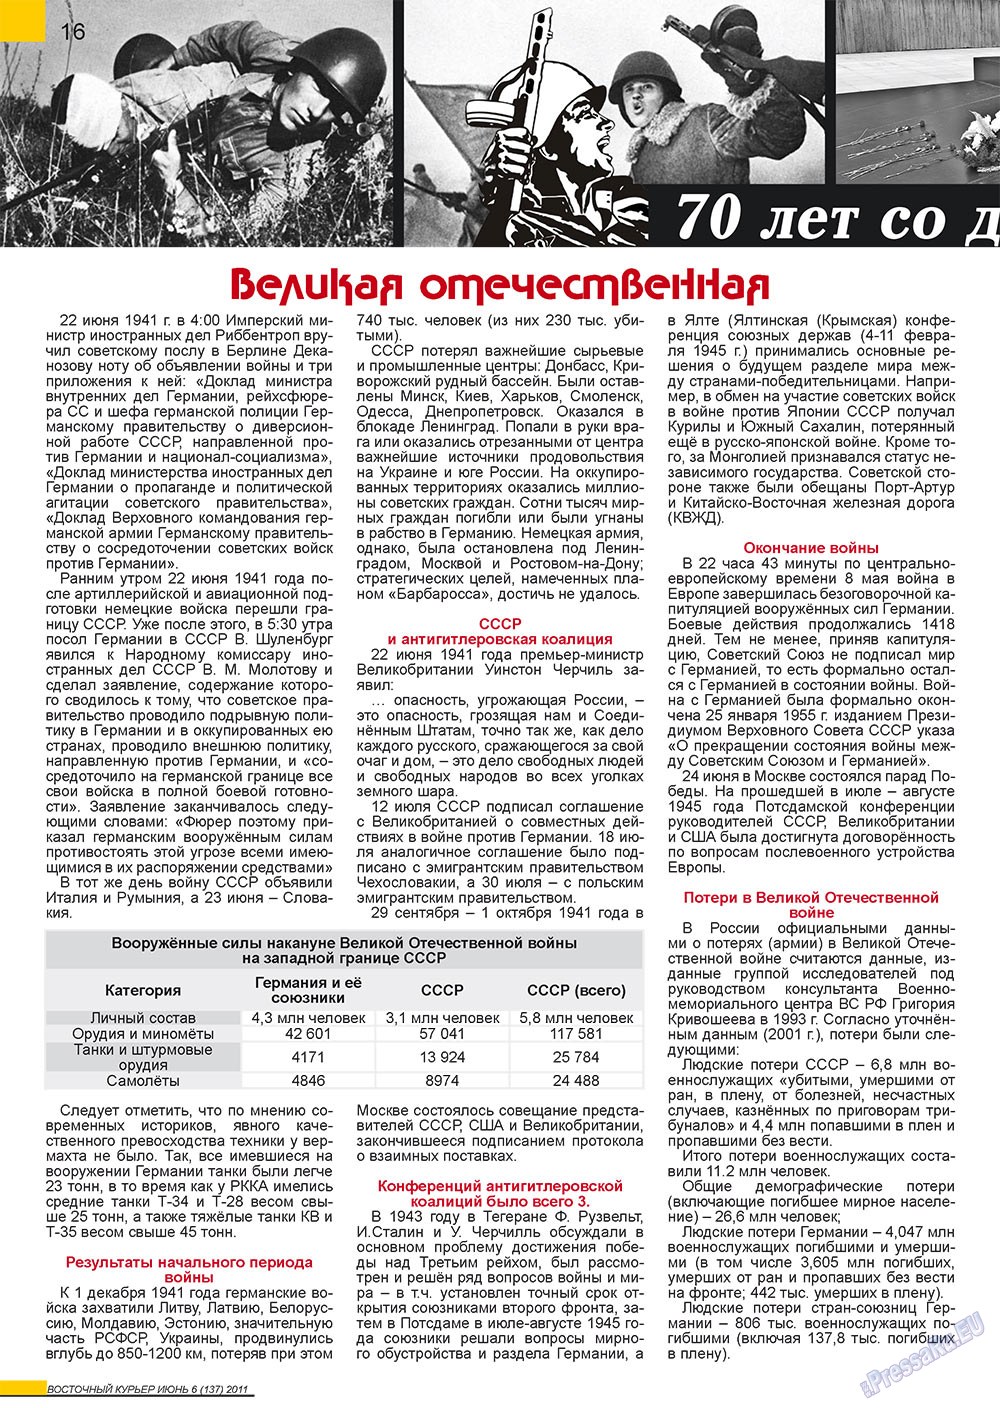 Восточный курьер, журнал. 2011 №6 стр.16